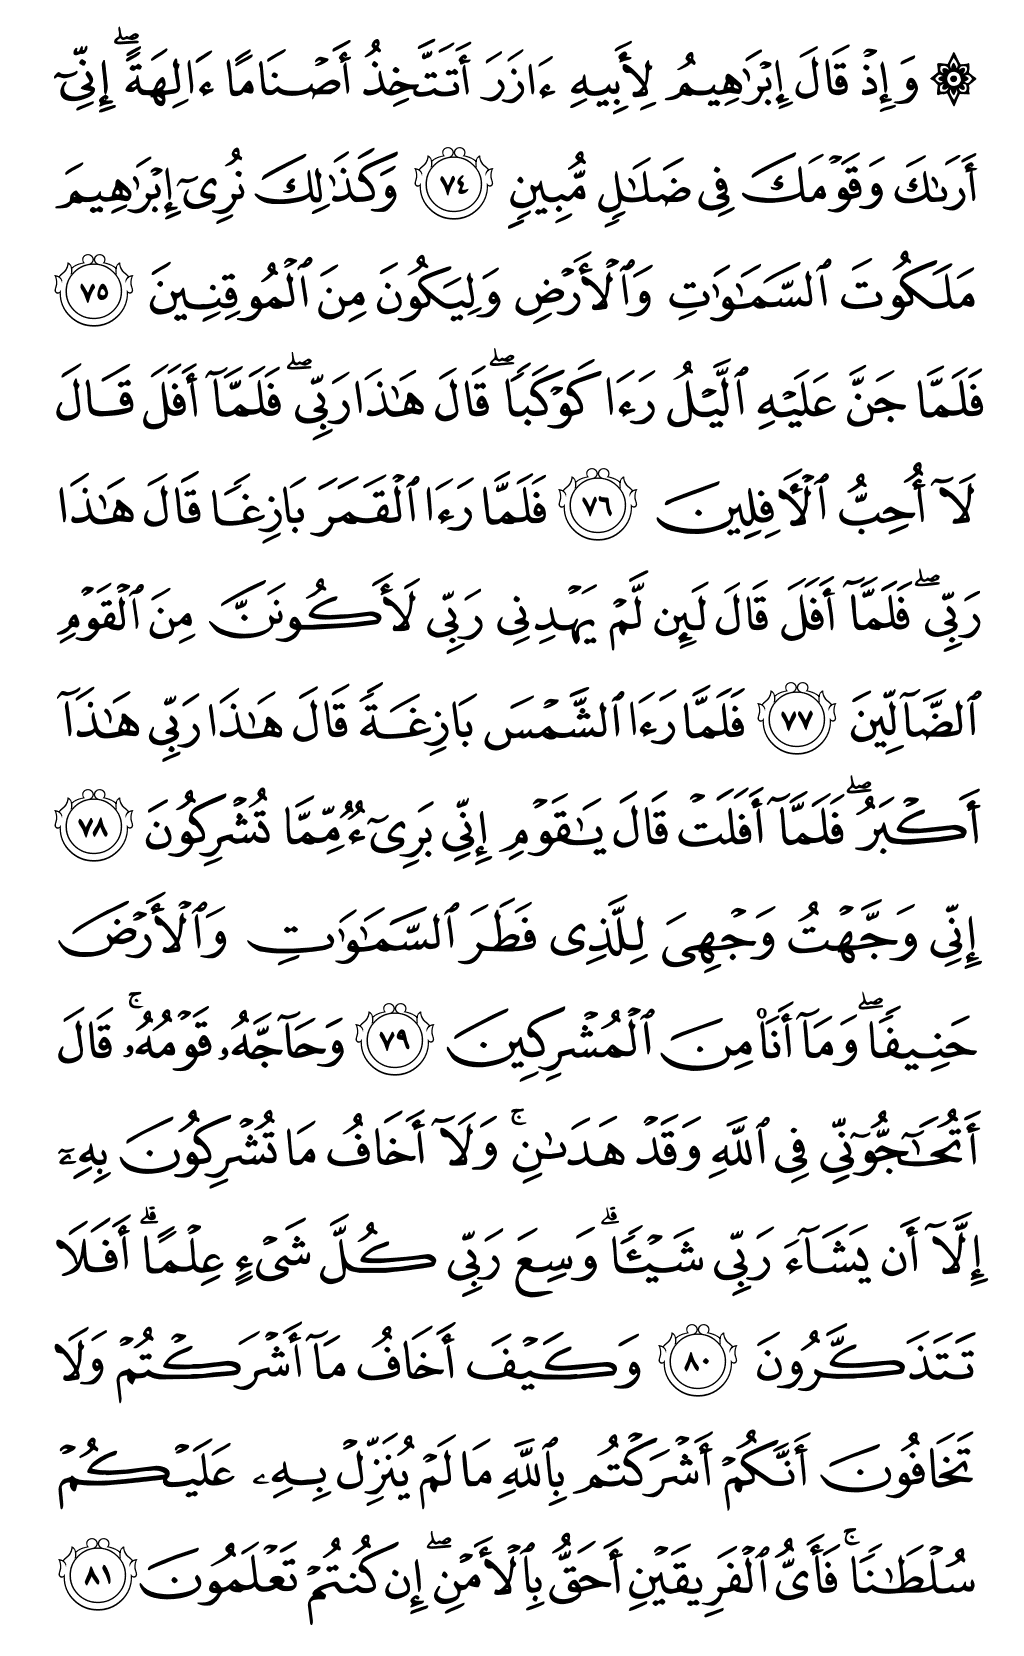 الصفحة رقم 137 من القرآن الكريم